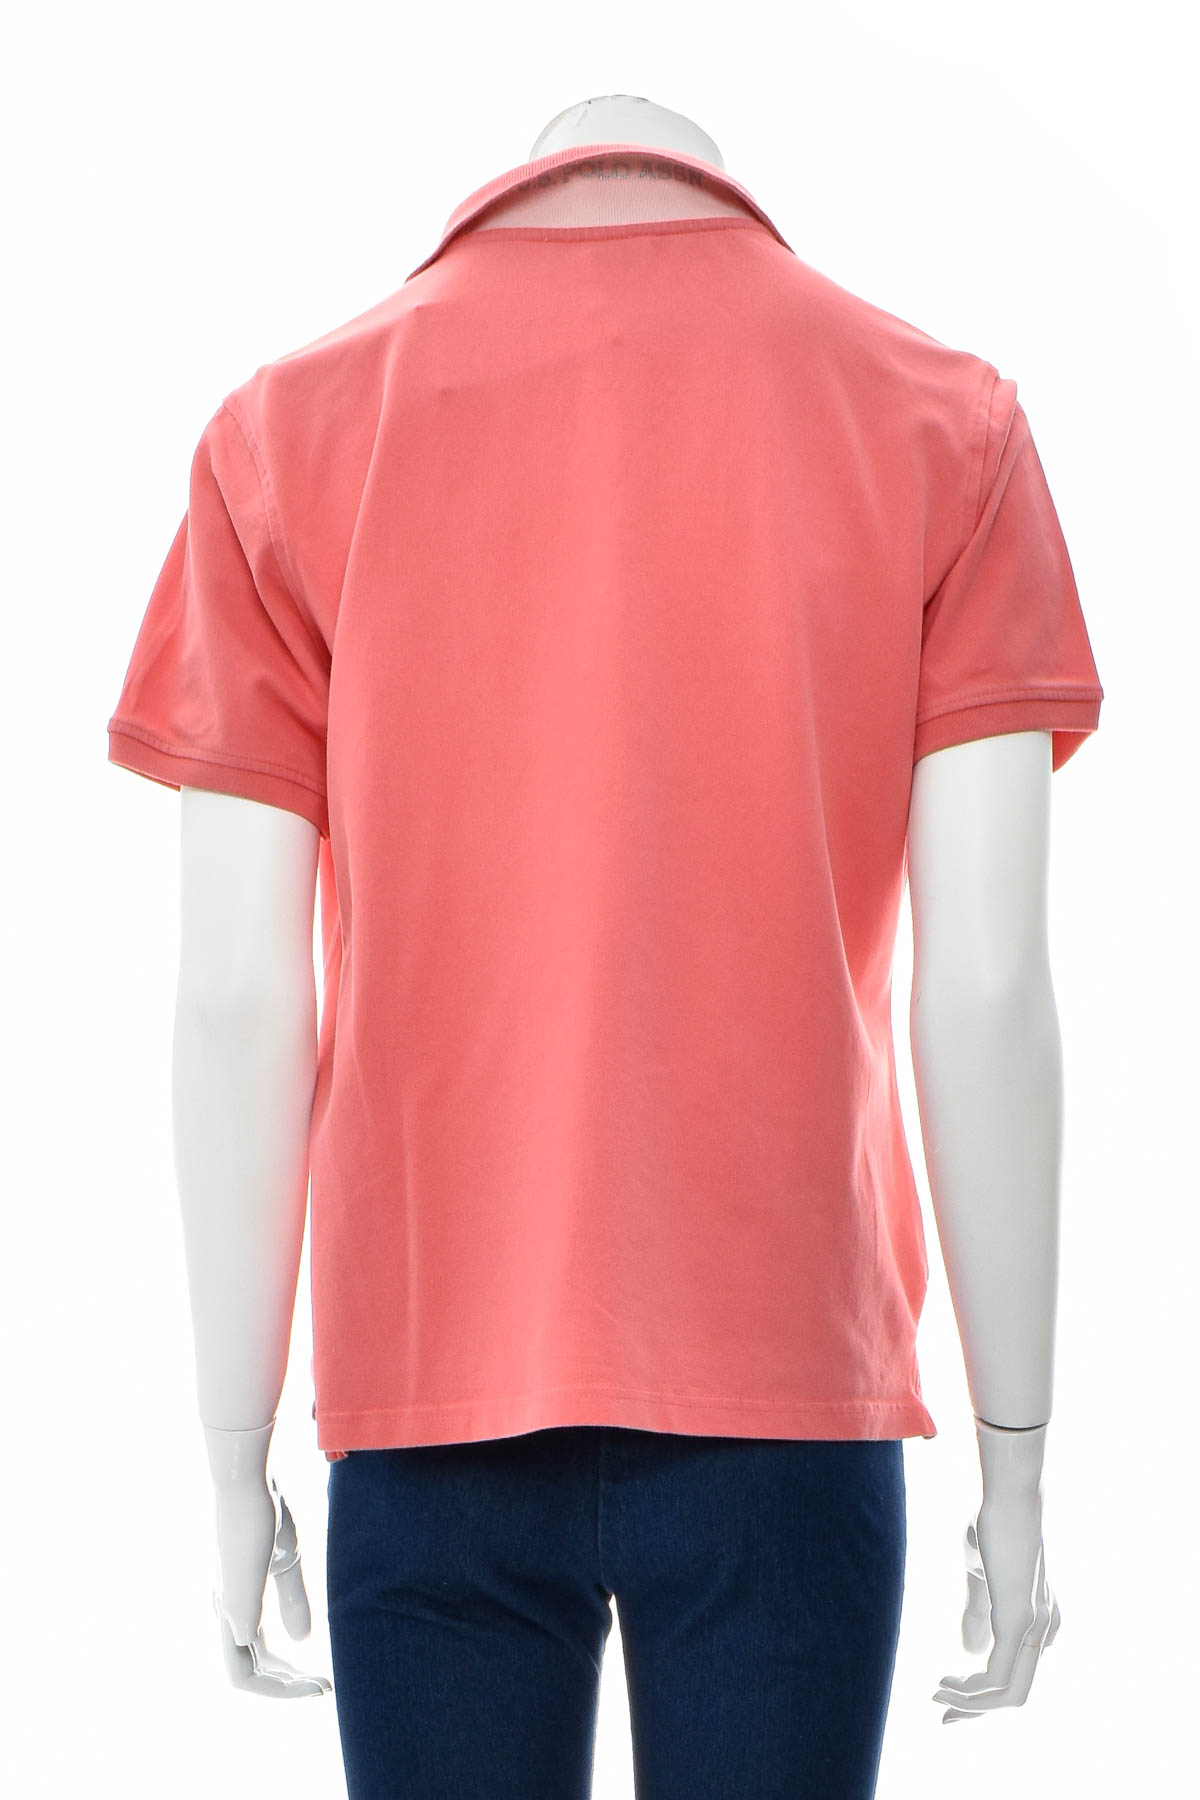 Γυναικεία μπλούζα - U.S. Polo ASSN. - 1